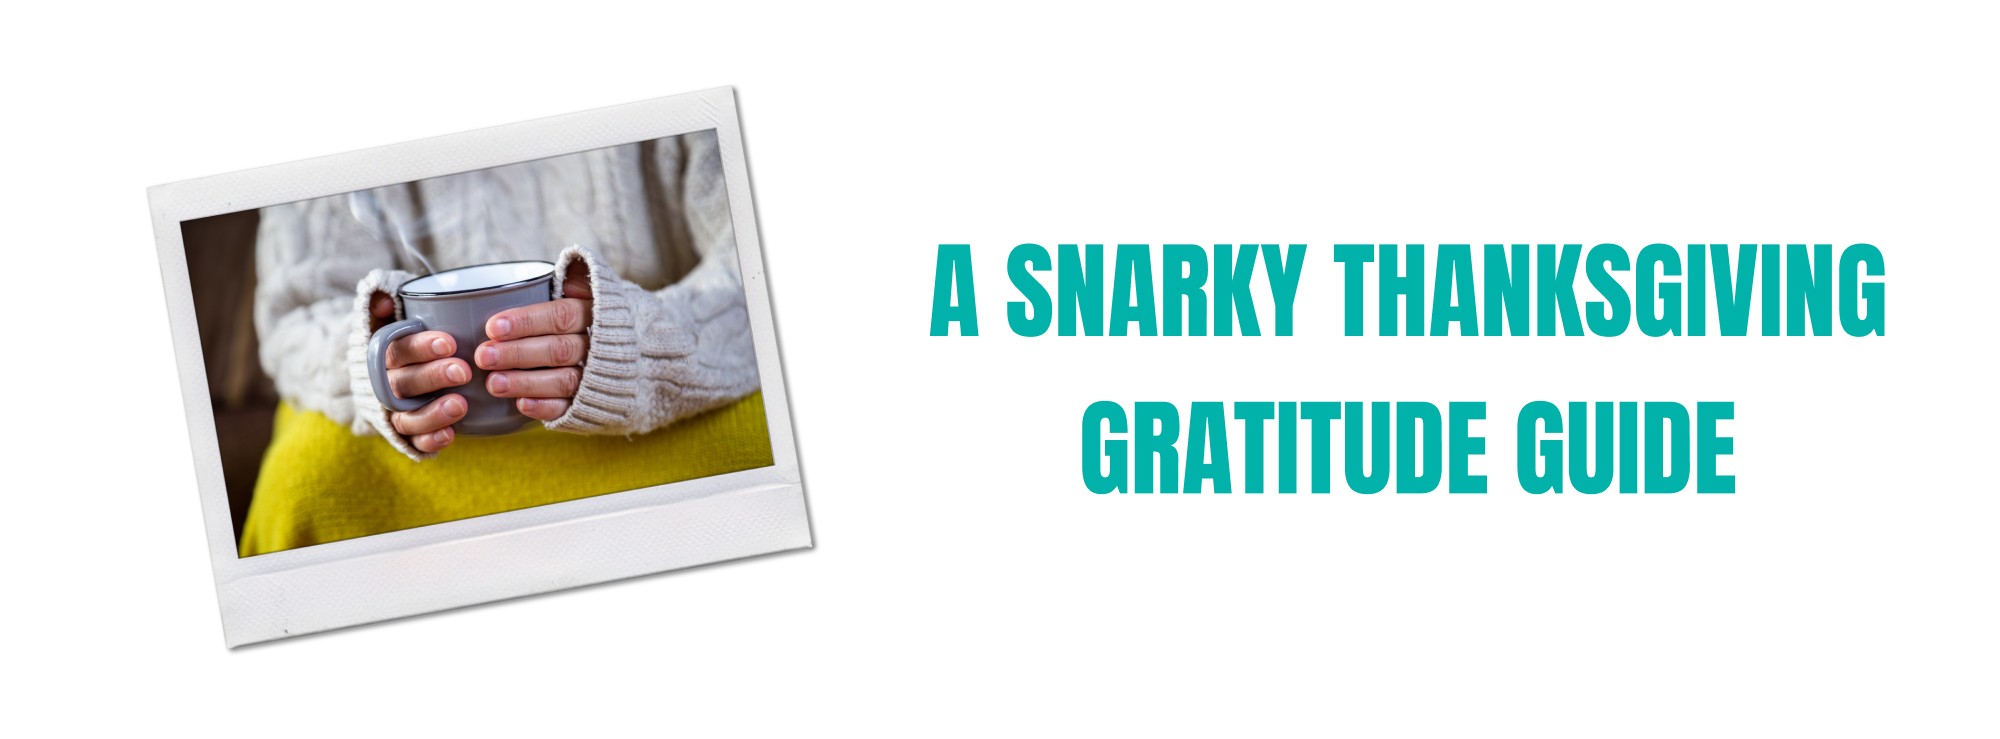 A Snarky Thanksgiving Gratitude Guide